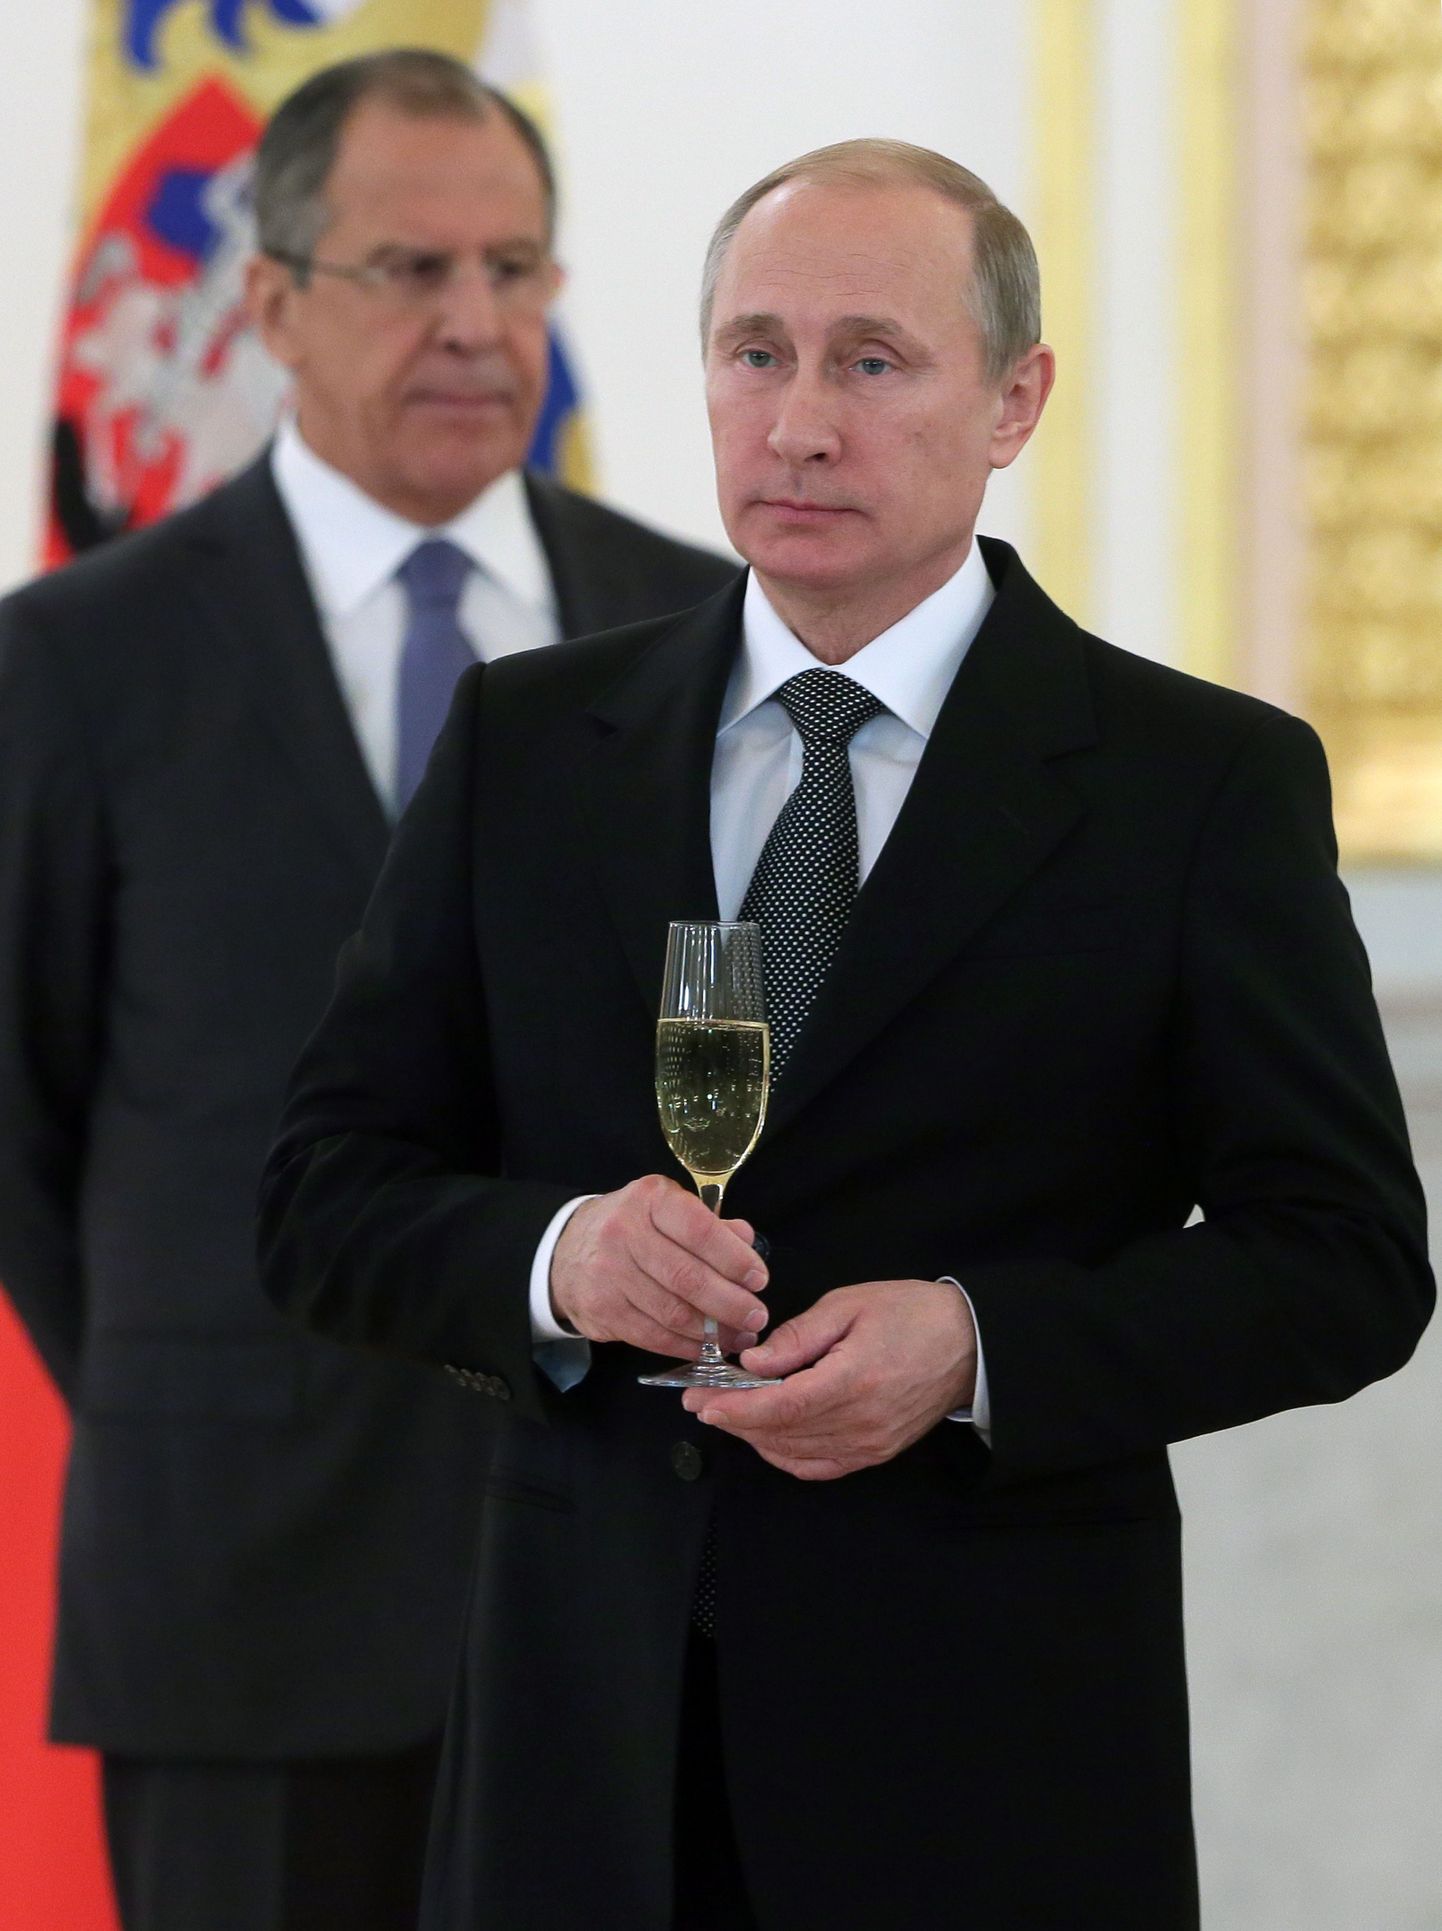 Vene president Vladimir Putin hoiab käes šampanjaklaasi, kohtudes Kremlis välisdiplomaatidega. Taga paistab välisminister Sergei Lavrov.